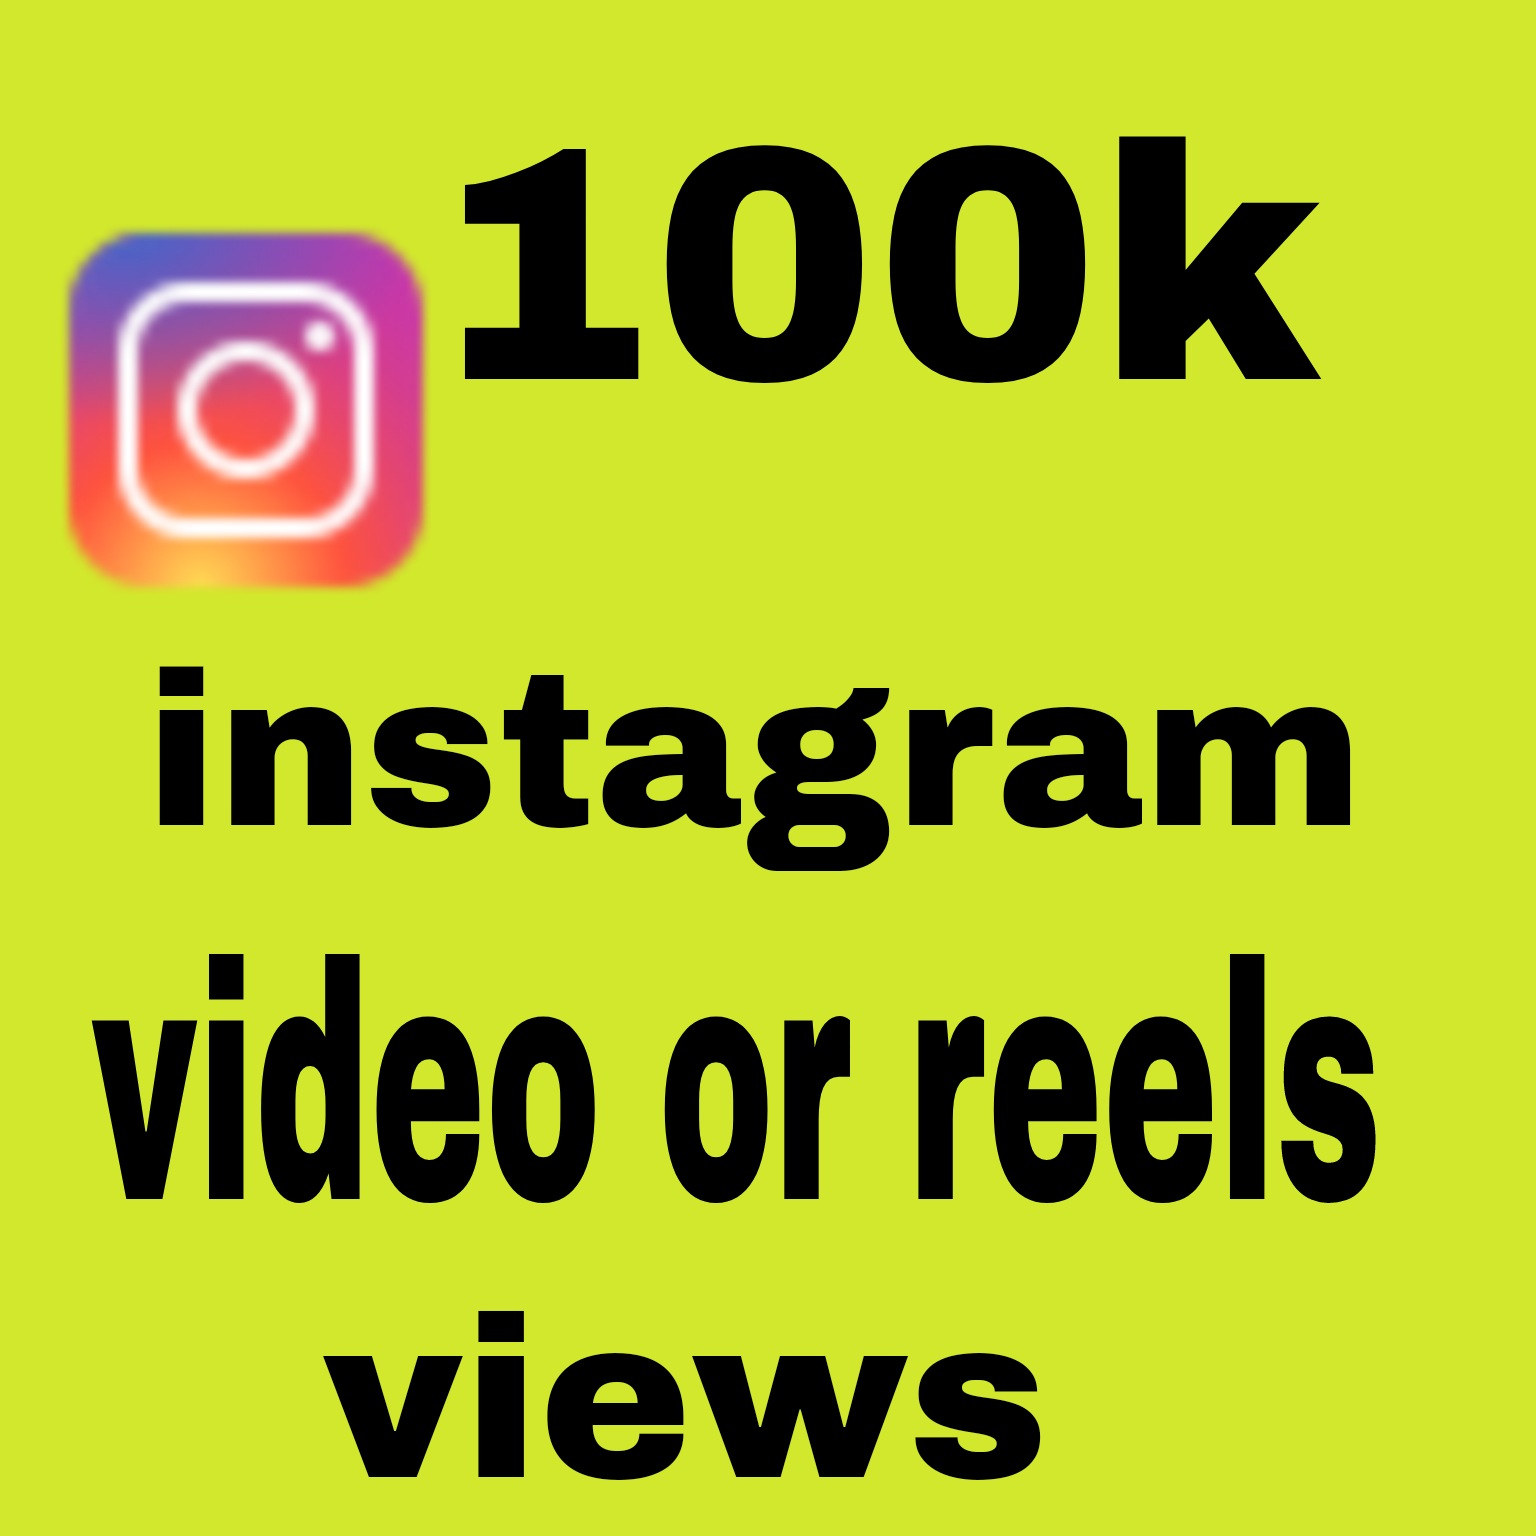 100k instagram video or reels views